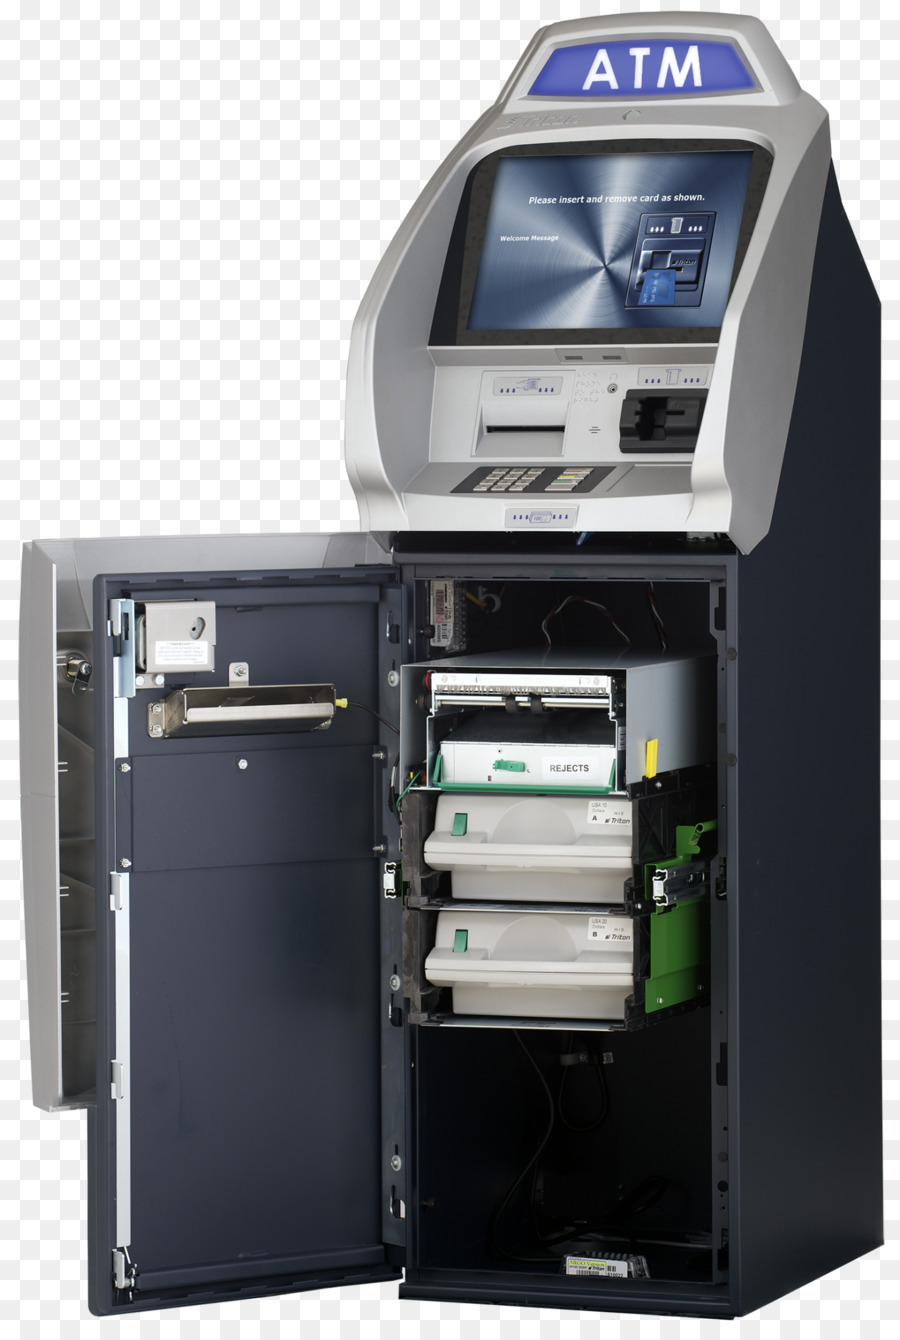 Automatisierte Teller-Maschine EMV Santander Bank - Atm